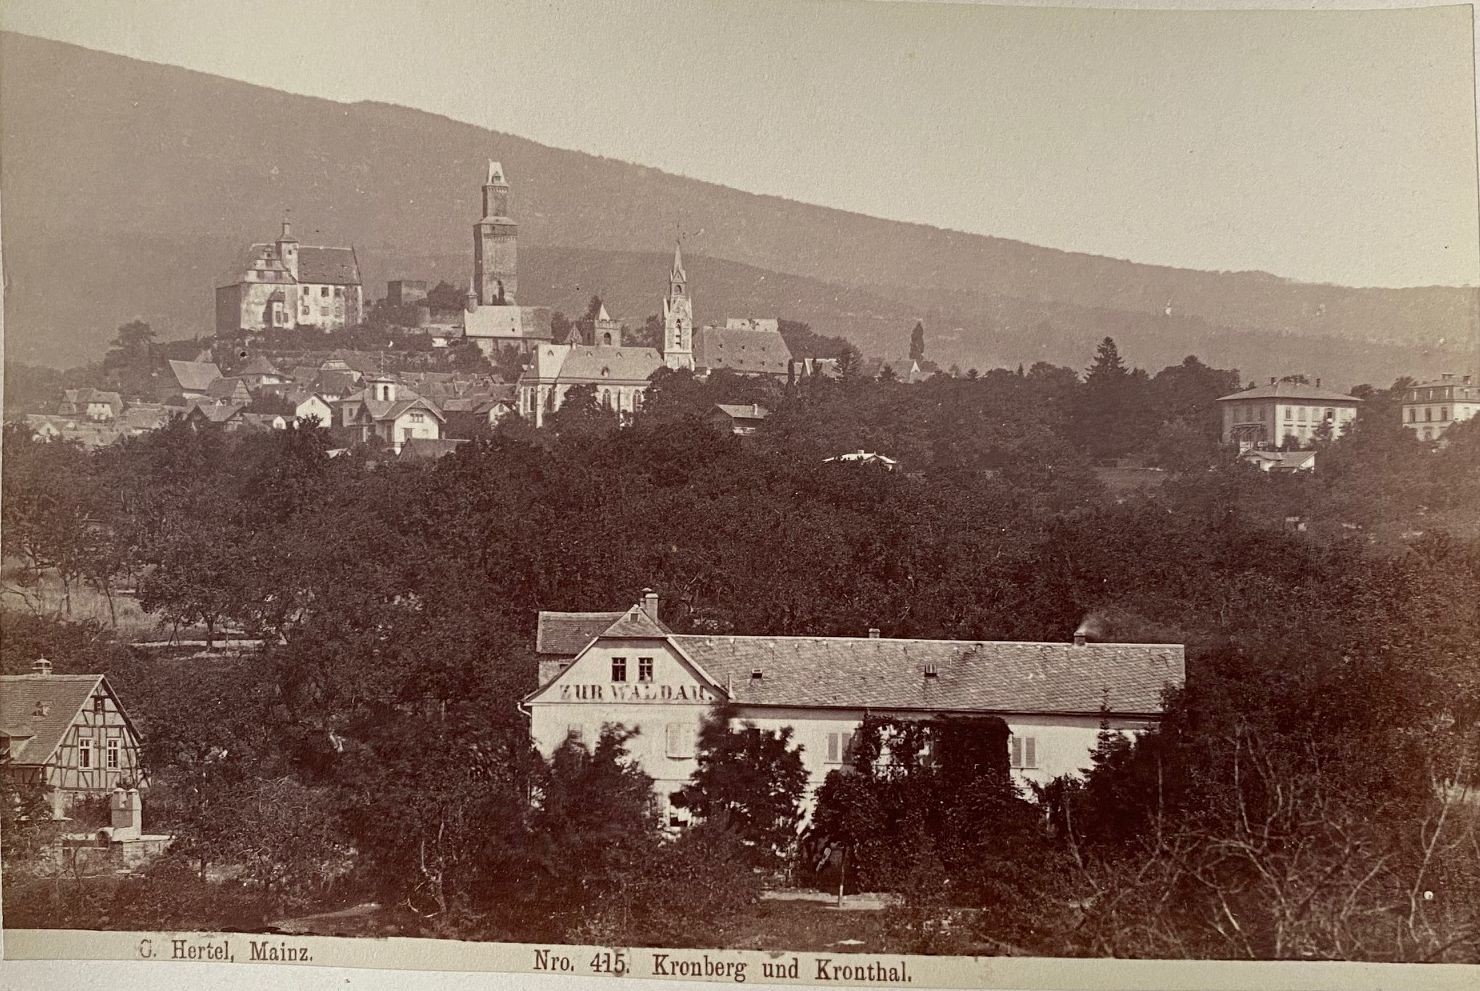 Fotografie, Carl Hertel No. 415, Kronberg und Kronthal, ca. 1885 (Taunus-Rhein-Main - Regionalgeschichtliche Sammlung Dr. Stefan Naas CC BY-NC-SA)